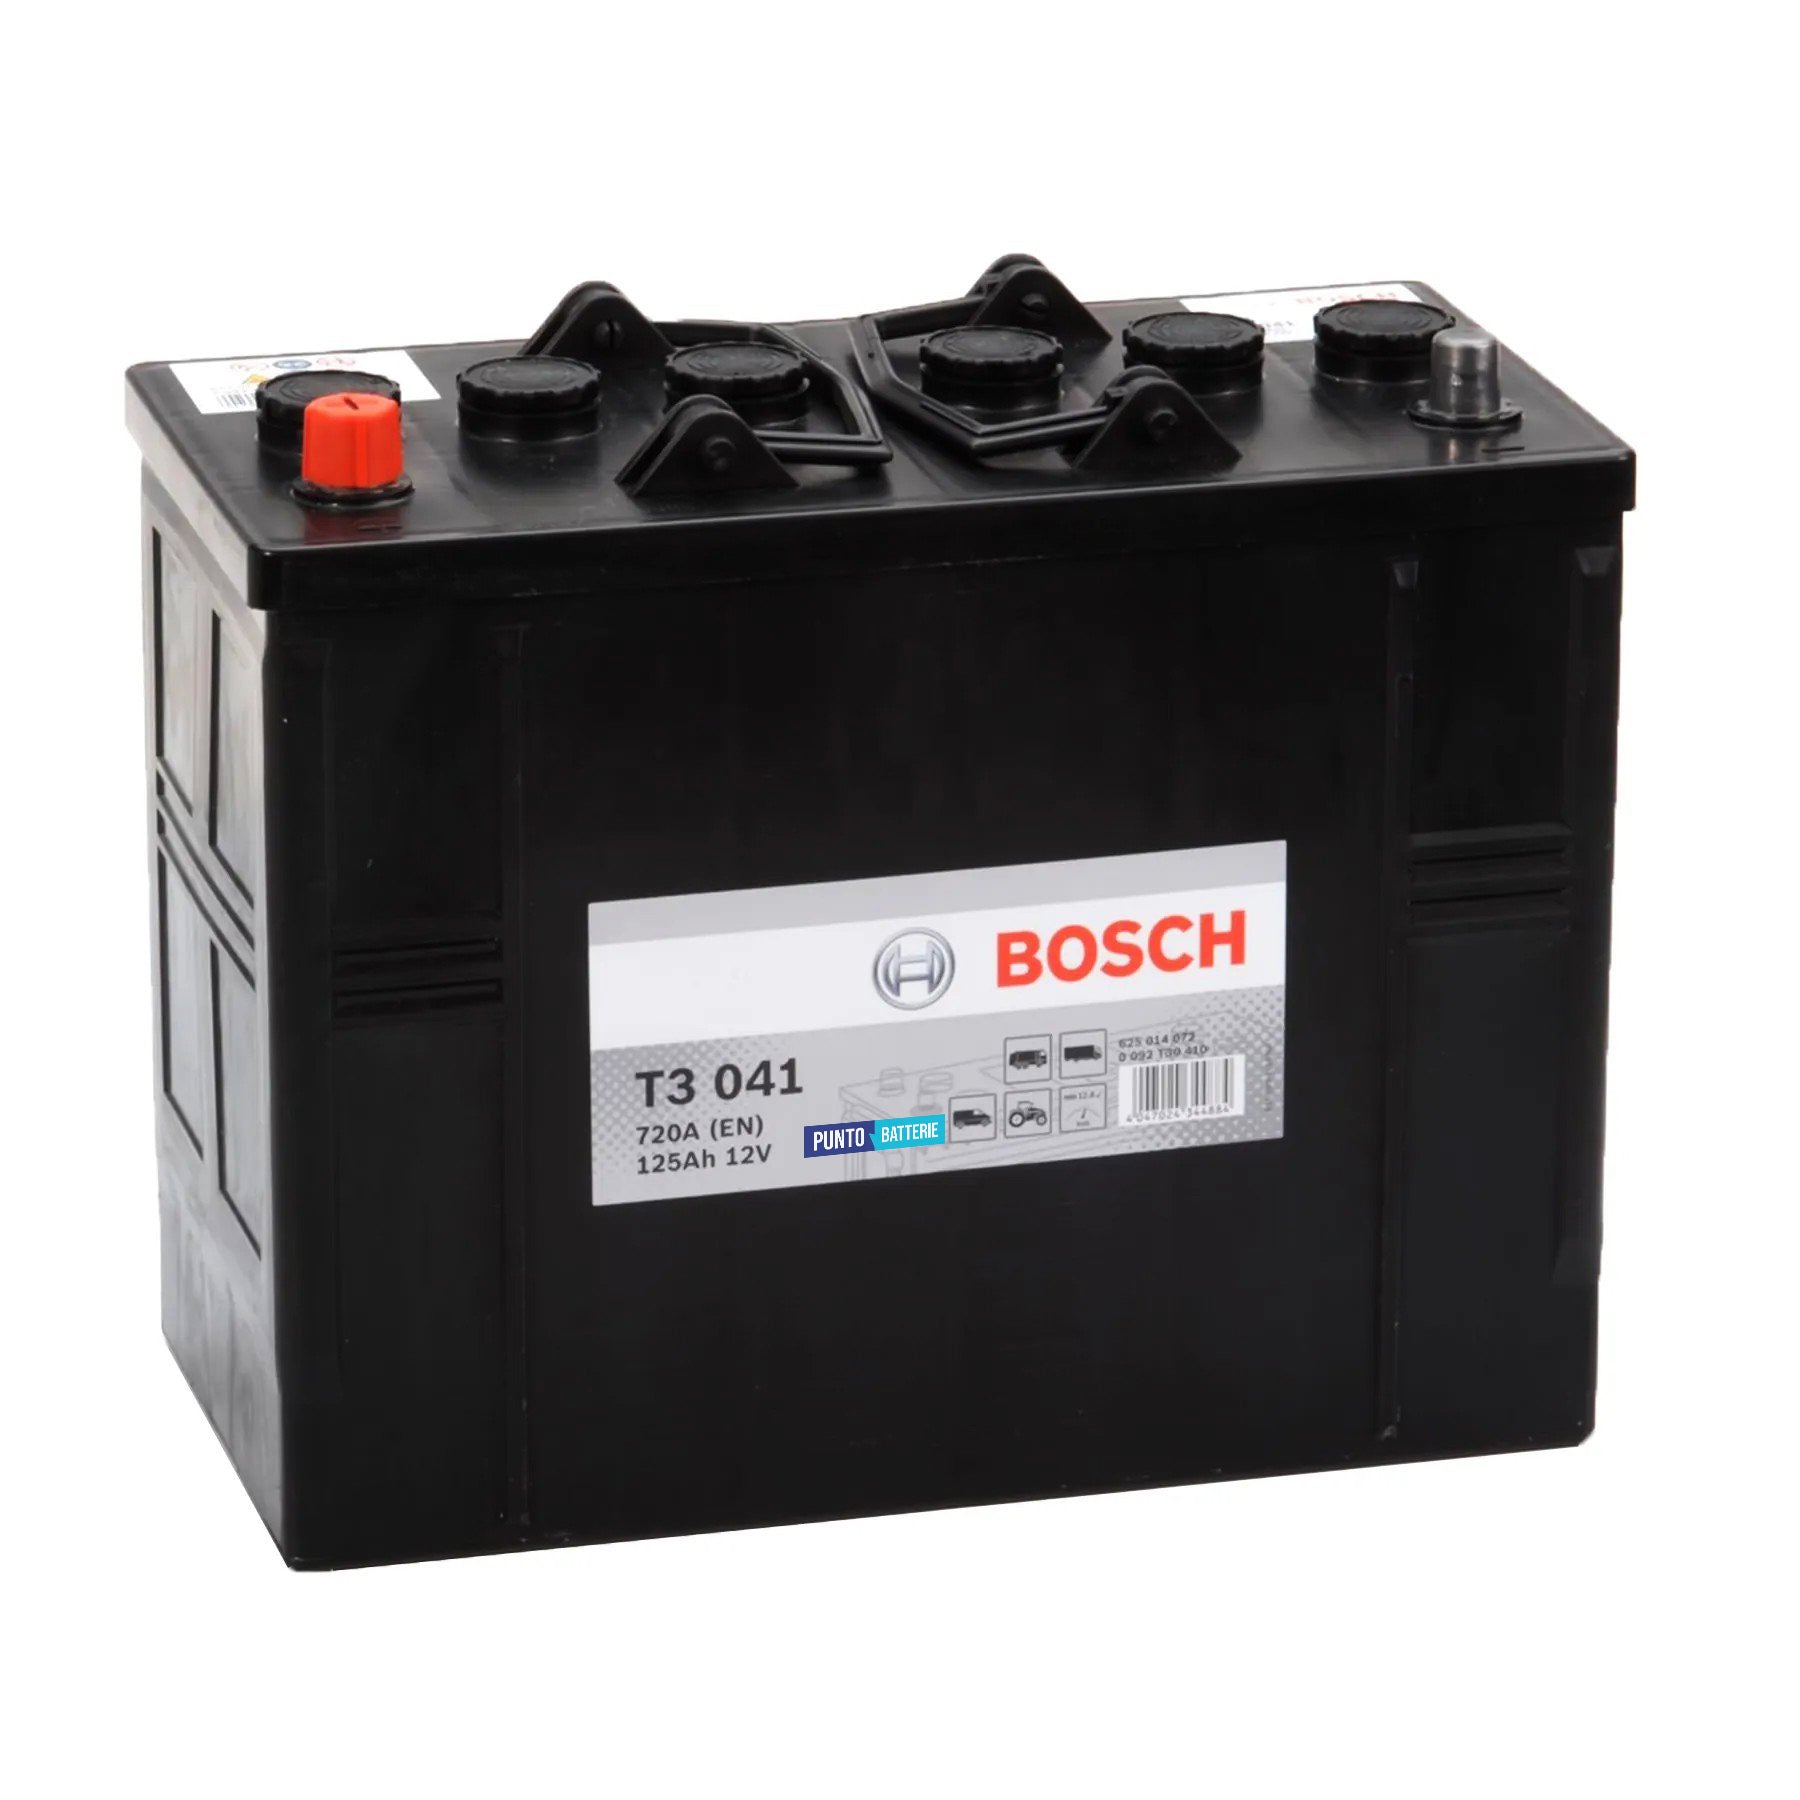 Batteria originale Bosch T3 T3041, dimensioni 344 x 172 x 285, polo positivo a sinistra, 12 volt, 125 amperora, 720 ampere. Batteria per camion e veicoli pesanti.